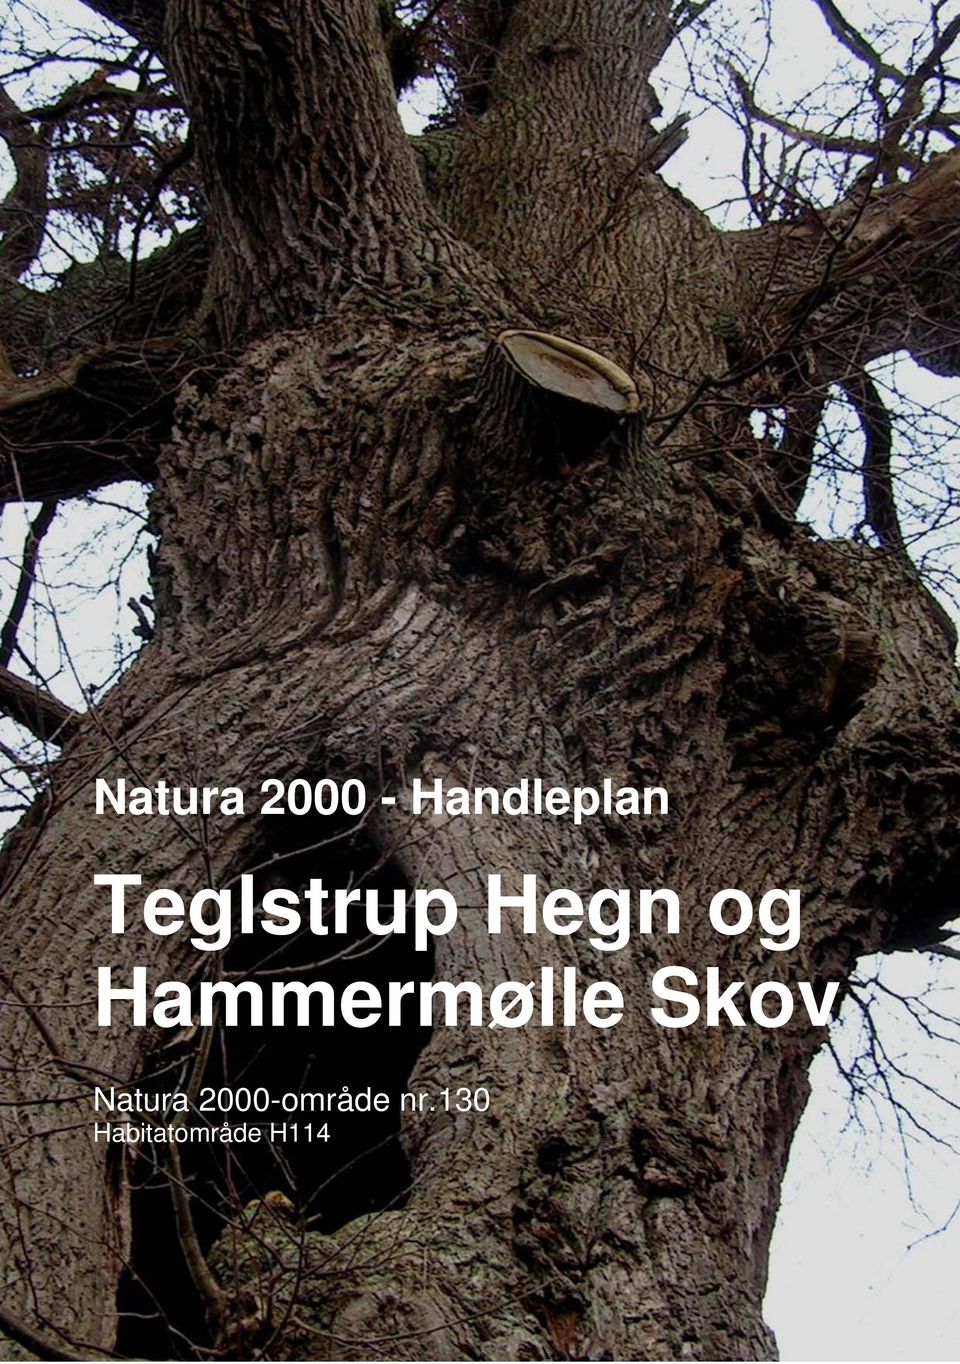 Hammermølle Skov Natura